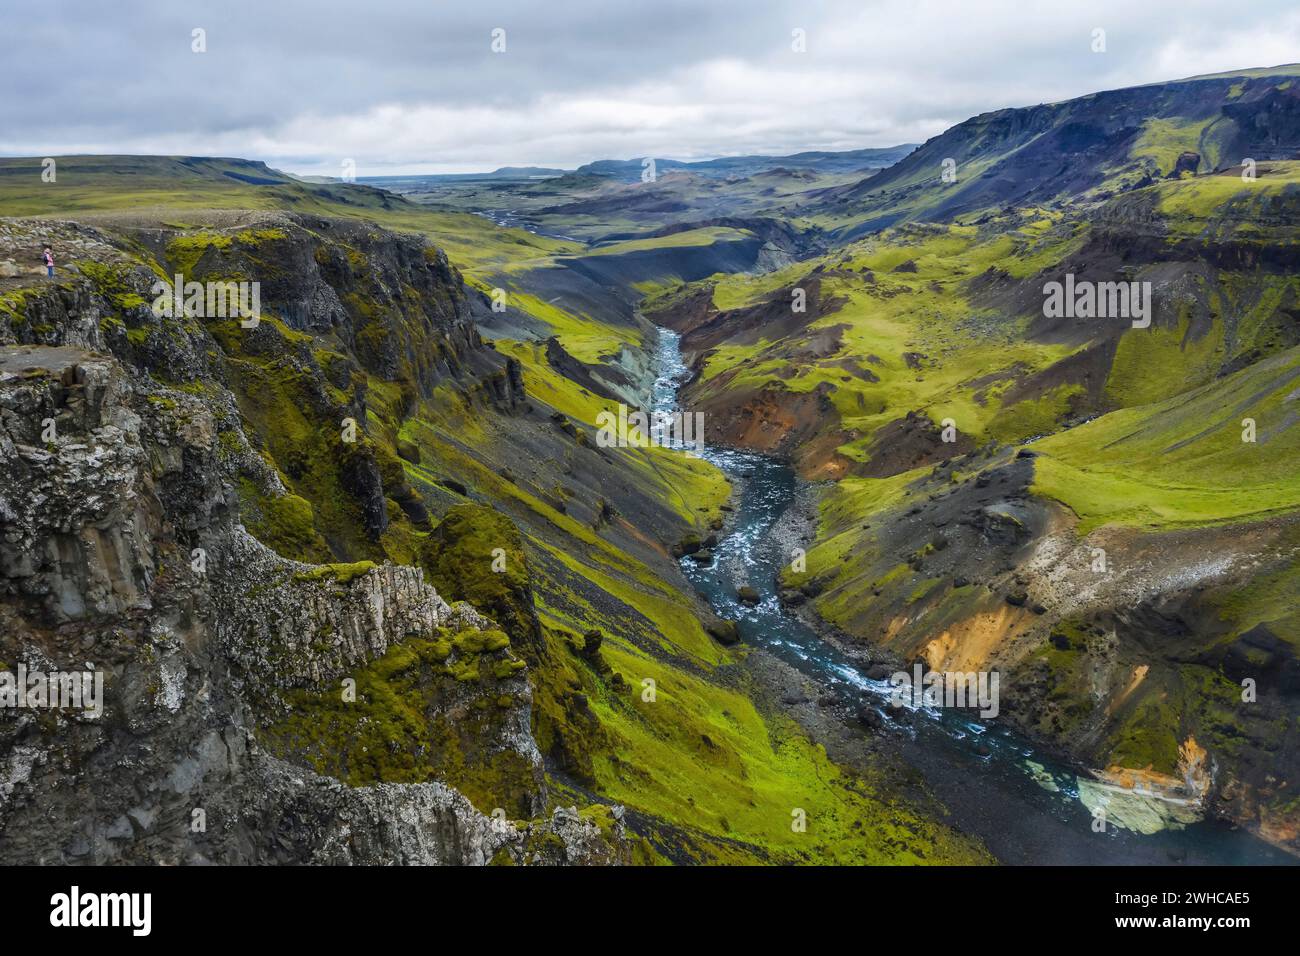 Frau Wanderer genießen die Highlands von Island. Fluss Fossa Strom im Landmannalaugar Canyon Tal. Hügel und Klippen sind von grünem Moos bedeckt. Stockfoto